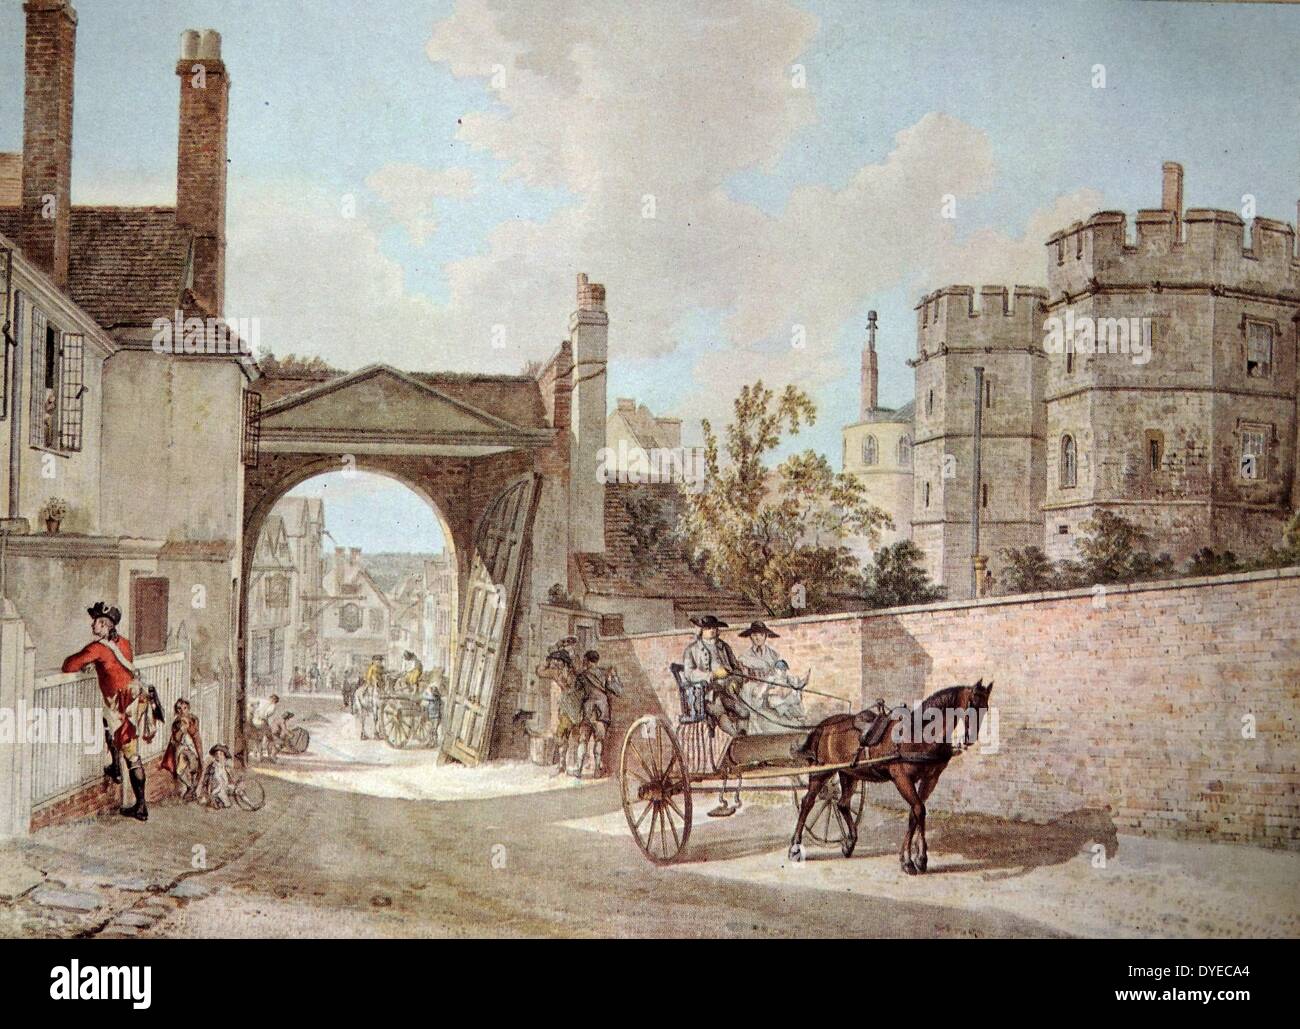 Paesaggio di pittura ad acquerello intitolato "Queen Elizabeth's Gateway". Il dipinto raffigura un gateway aperto e il Castello di Windsor in background. Da Paul Sandby (1731 - 1809) Inglese acquerellista e paesaggista. Datata 1761 Foto Stock